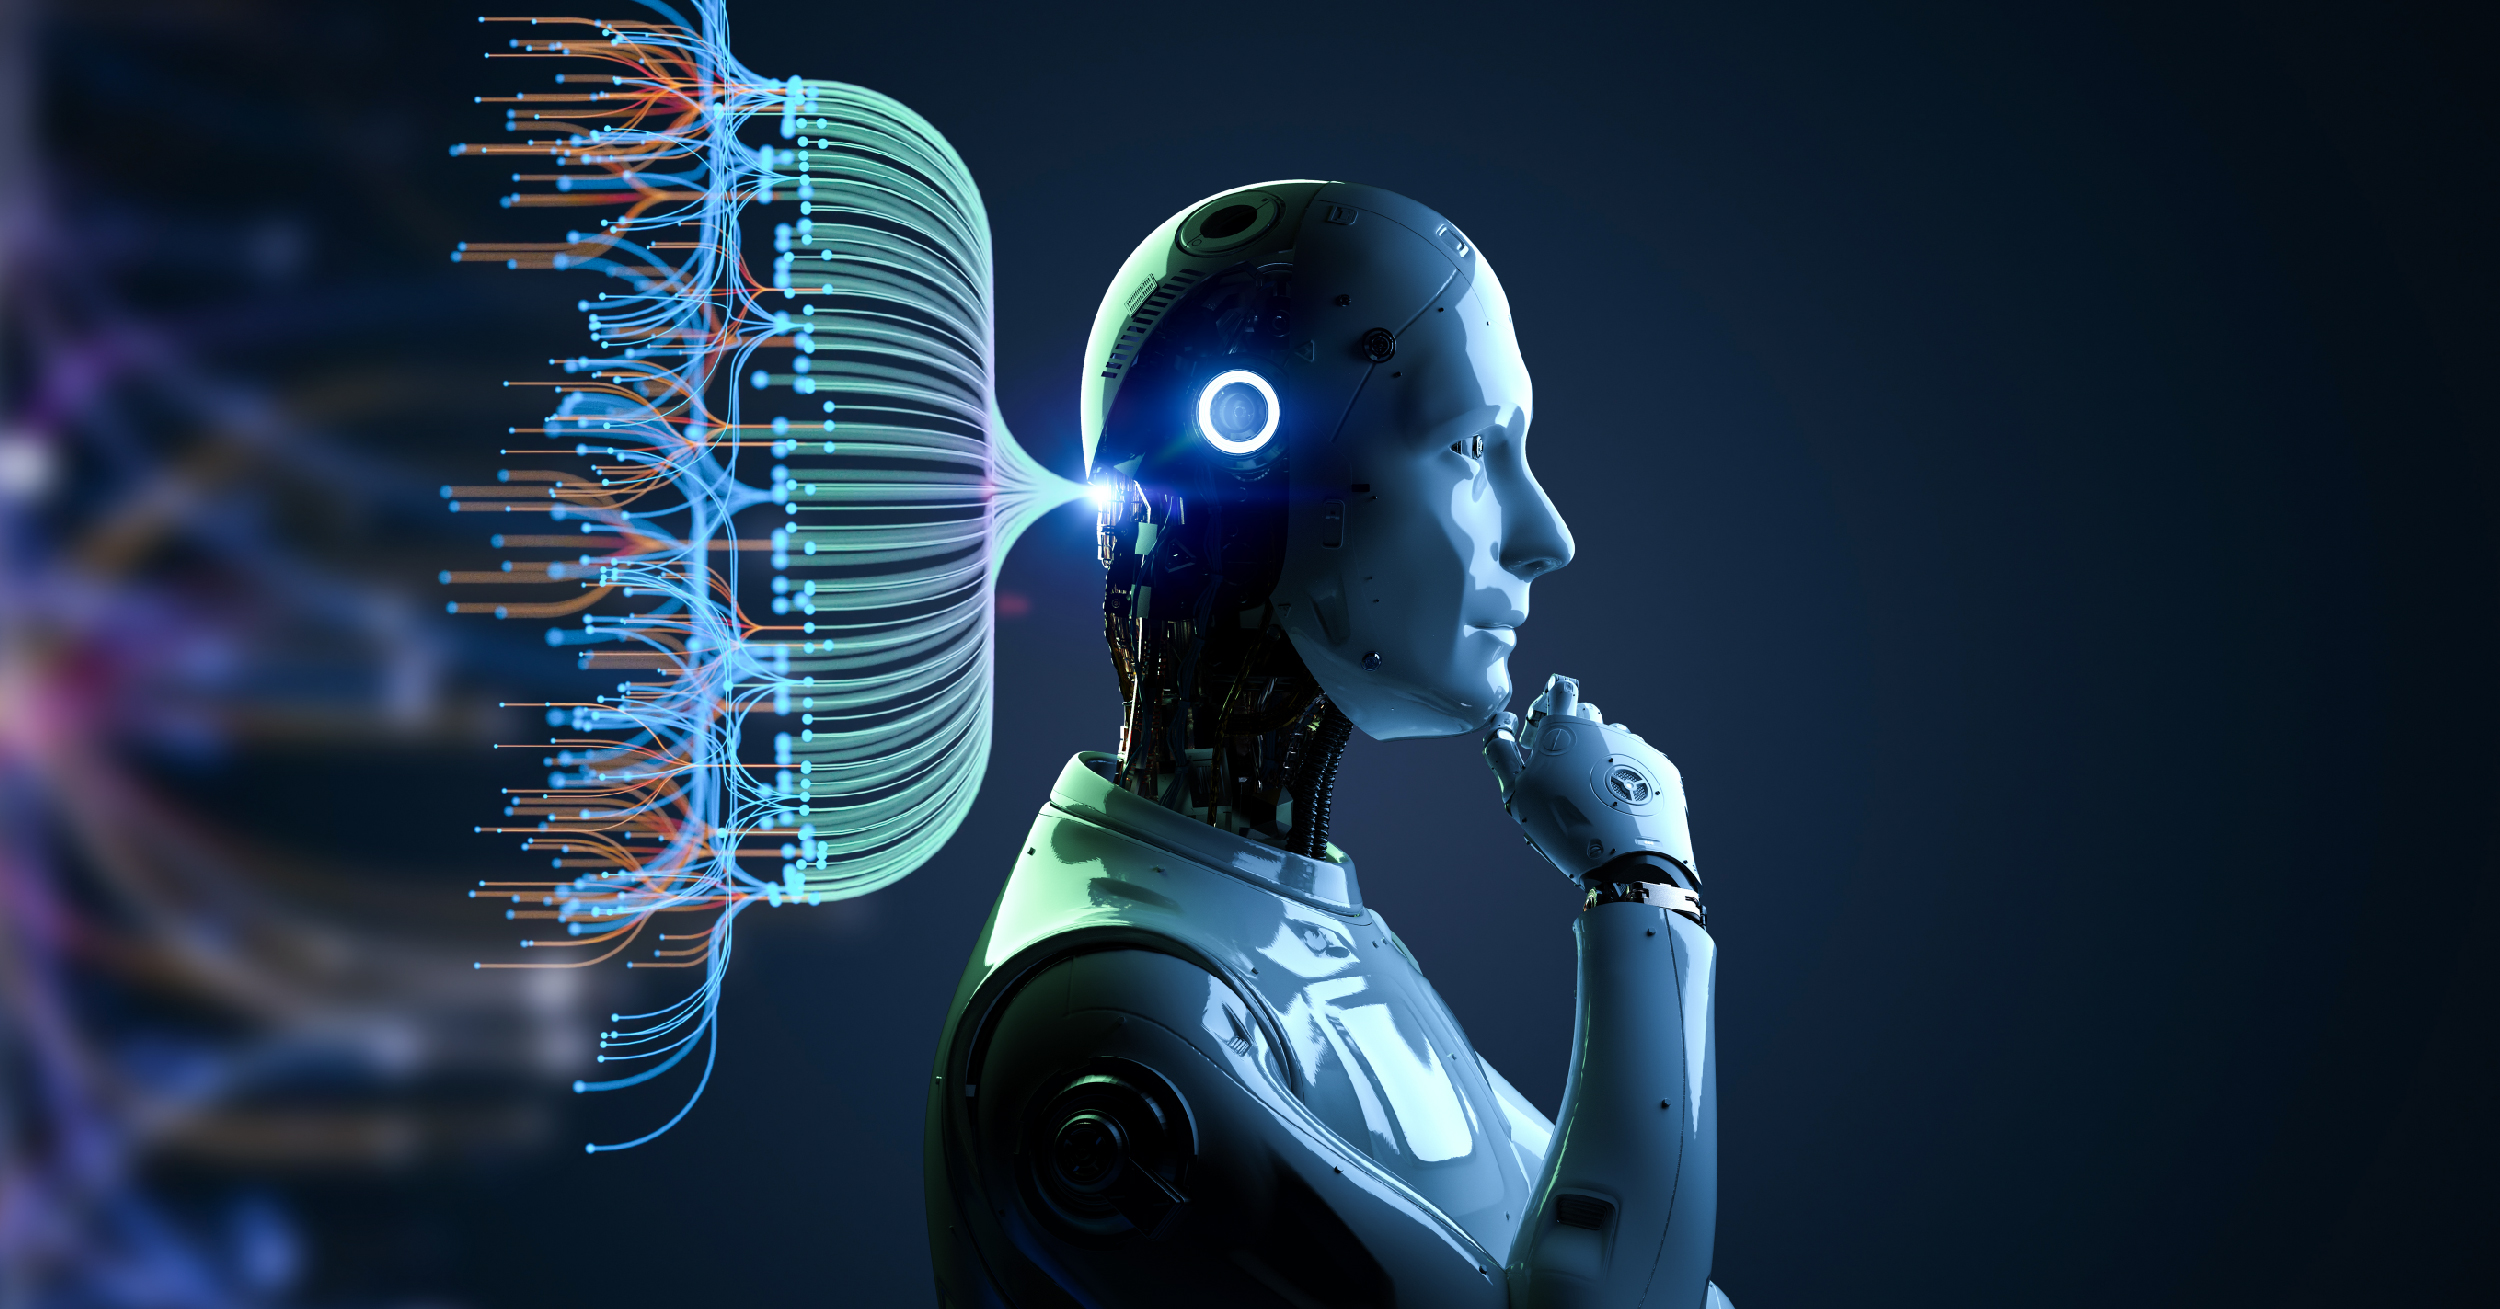 Descubriendo el Mañana: Tendencias Emergentes en Inteligencia Artificial